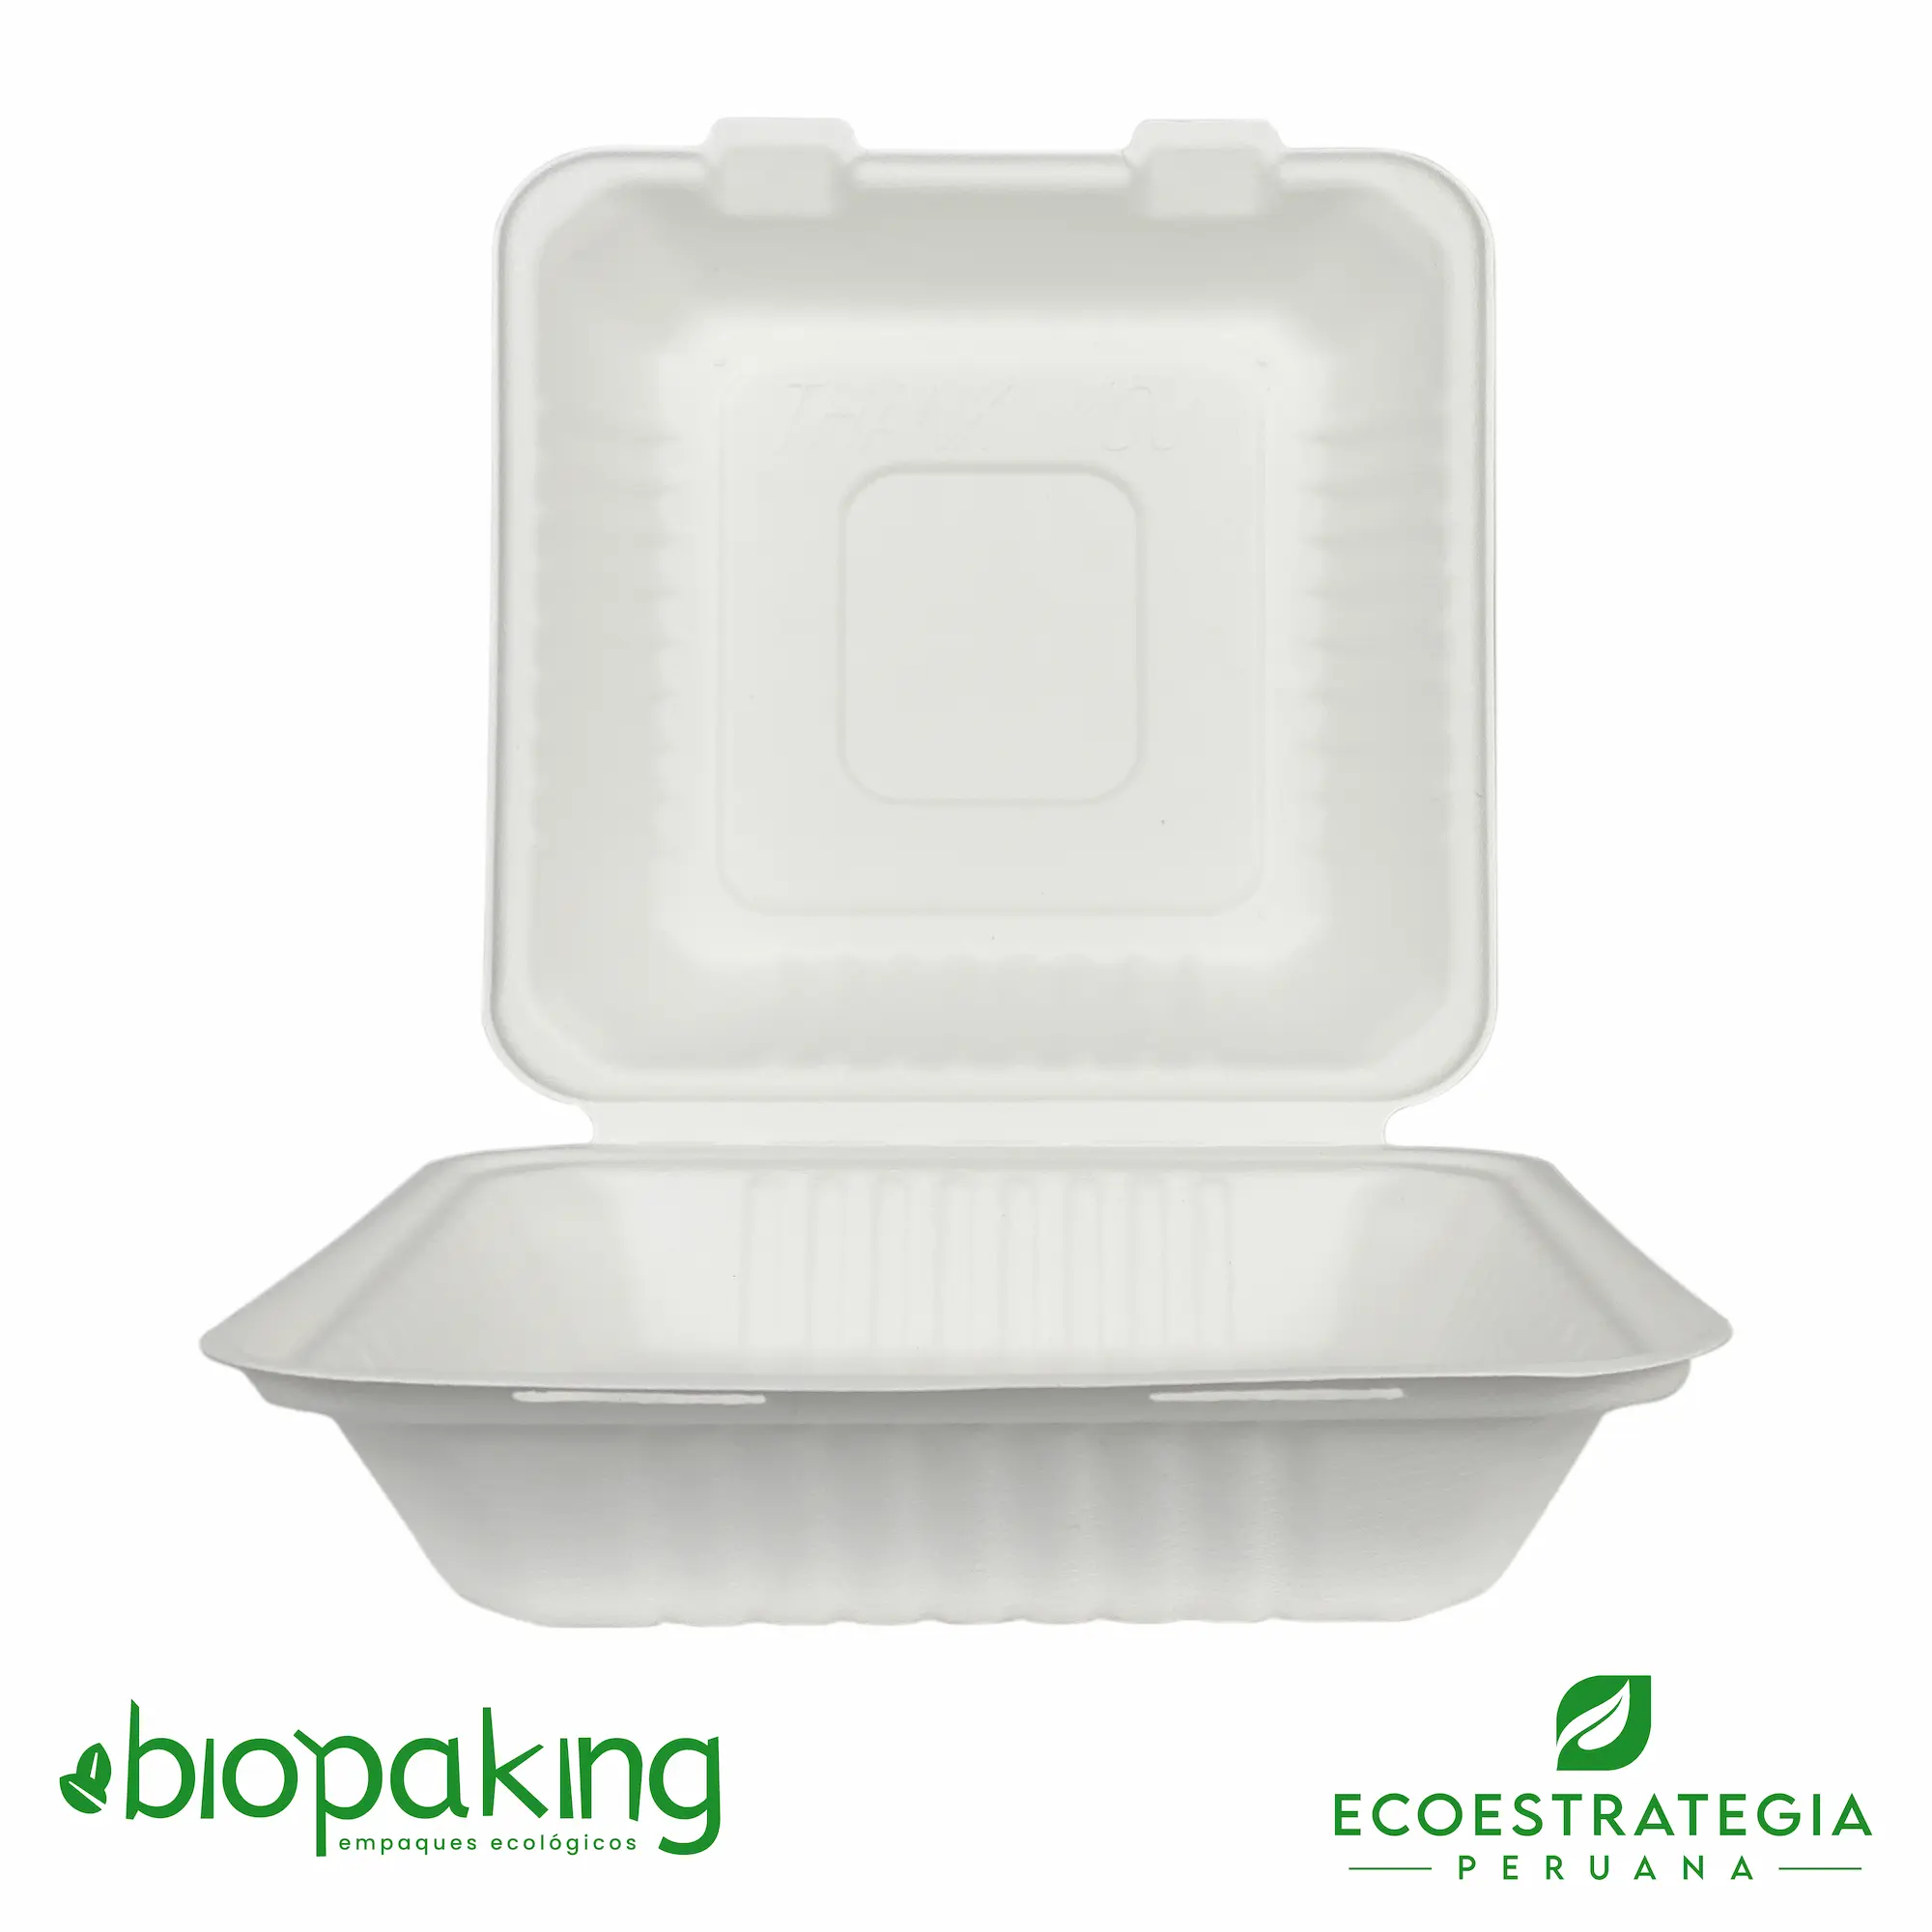 El envase biodegradable CT3 o EP-09, es conocido también como envases biodegradables ct3, envases ecológicos ct3, envases descartables ct3, envases ep09, CT3 Biodegradable, Box grande, envases biodegradables 20x20, envases biodegradables 21x21, Bcs09, Contenedor 3 fibra, envase ct3, contendor ct3, contenedor eco 1000 fibra de caña, contenedor eco 1200ml, envase 8x8 pulgadas pulpa de caña, clamshell 100 ml, clamshell 1200 ml, contenedor cuadrado 1200 ml, contenedor biodegradable bisagra 8 x 8”, contenedor de fibra de caña ct3, v3, envase biodegradable para ½ pollo, 8x8 bagazo de caña, envase rectangular biodegradable, importadores de envases biodegradable ct3, distribuidores ct3 biodegradable, mayoristas ct3 biodegradable